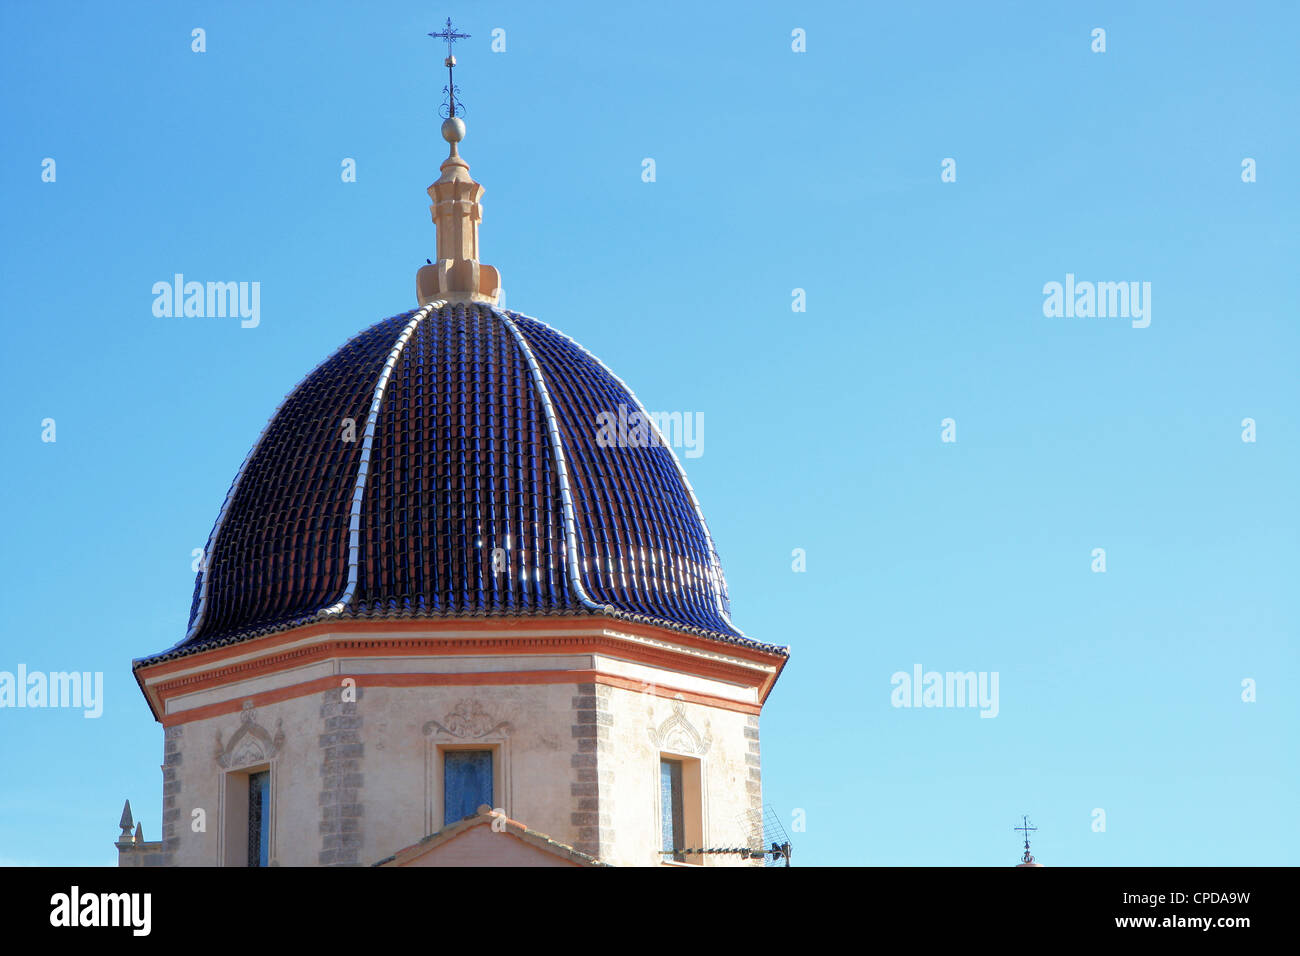 Typische gefliest Kirchendach, Vall de Uxo, Valencia, Spanien Stockfoto